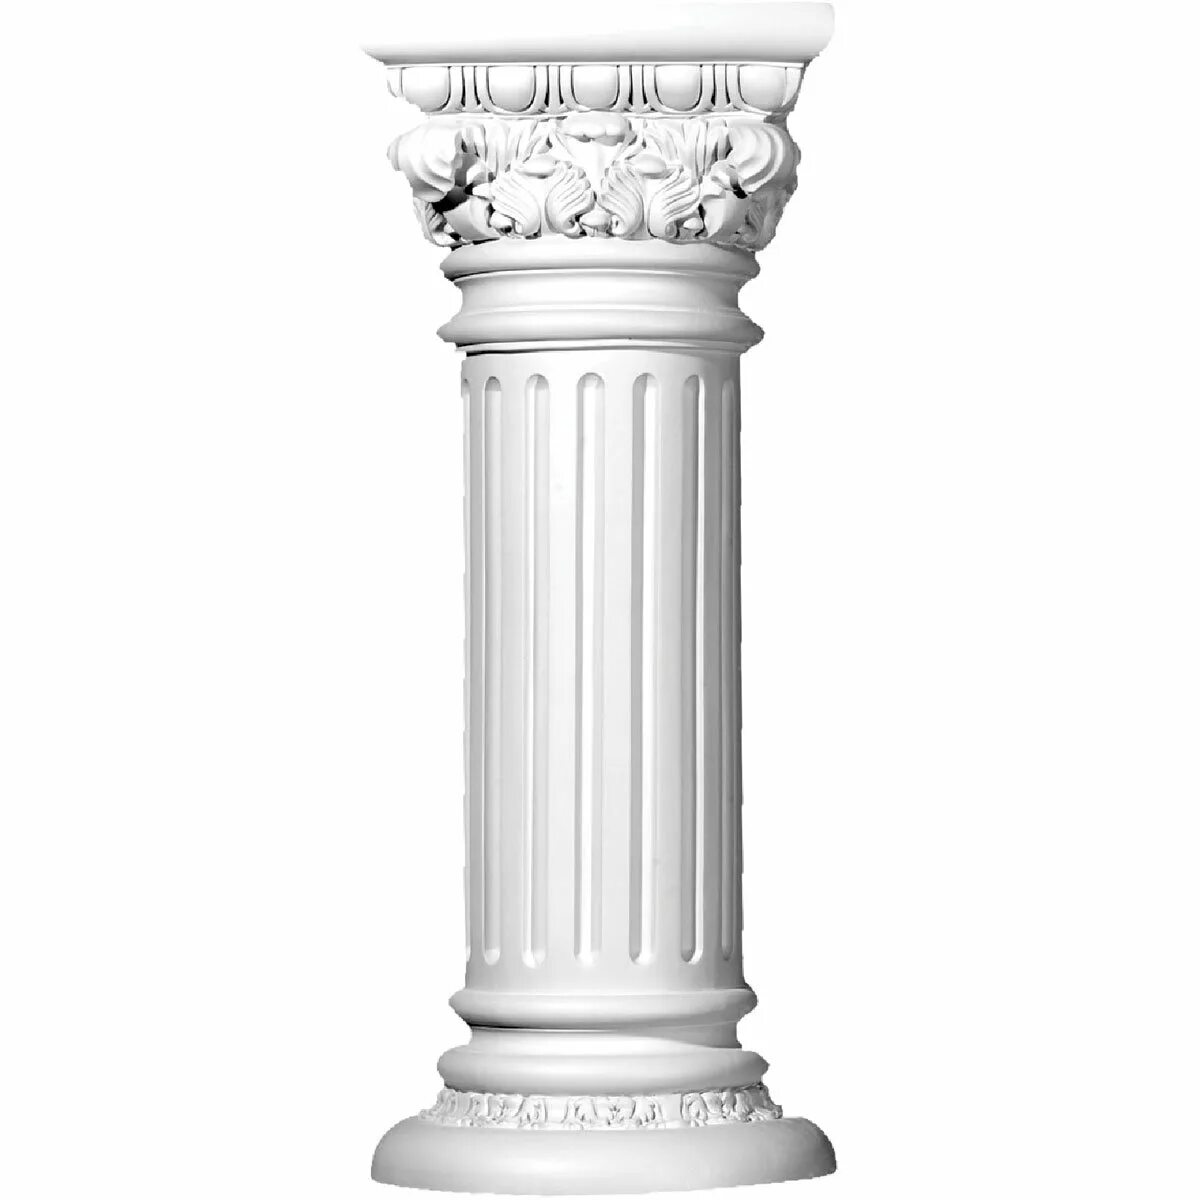 Ордеры белые. Древнегреческая колонна вектор. Античные колонны. Греческие колонны. Колонна на белом фоне.